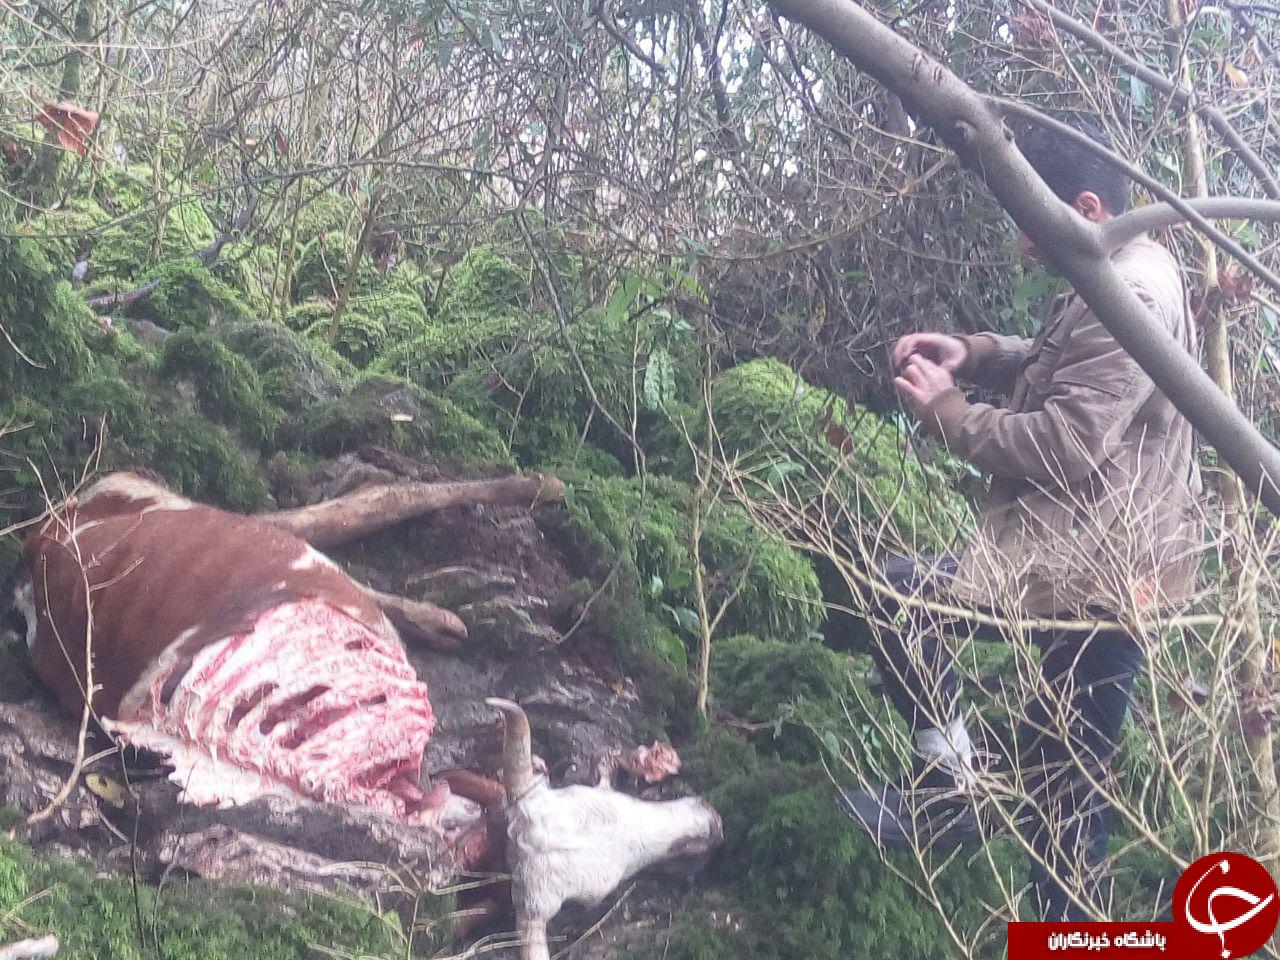 حمله پلنگ به یک راس گاو+ تصاویر